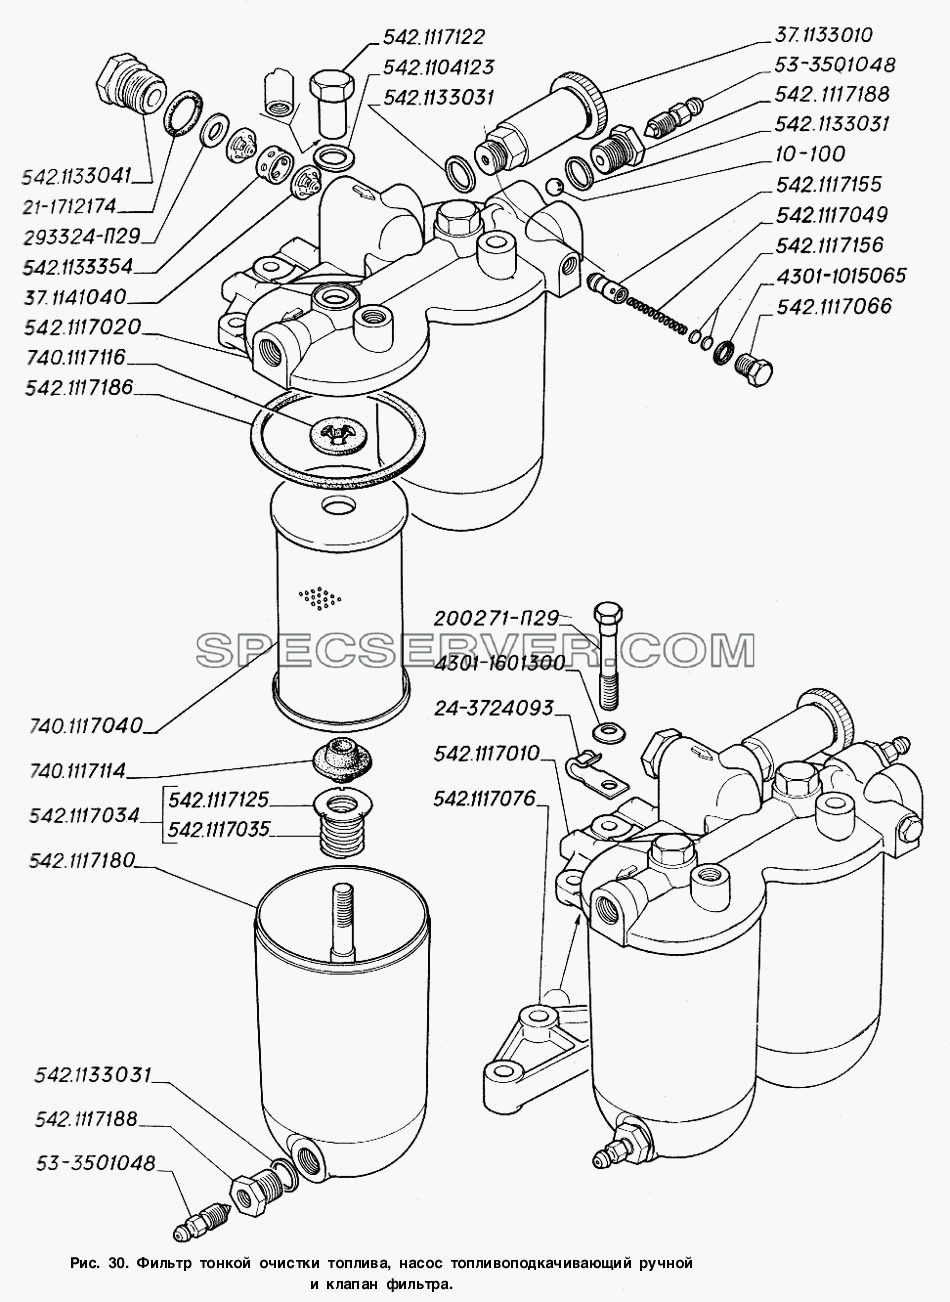 Фильтр тонкой очистки топлива, насос топливоподкачивающий ручной и клапан фильтра для ГАЗ-4301 (список запасных частей)